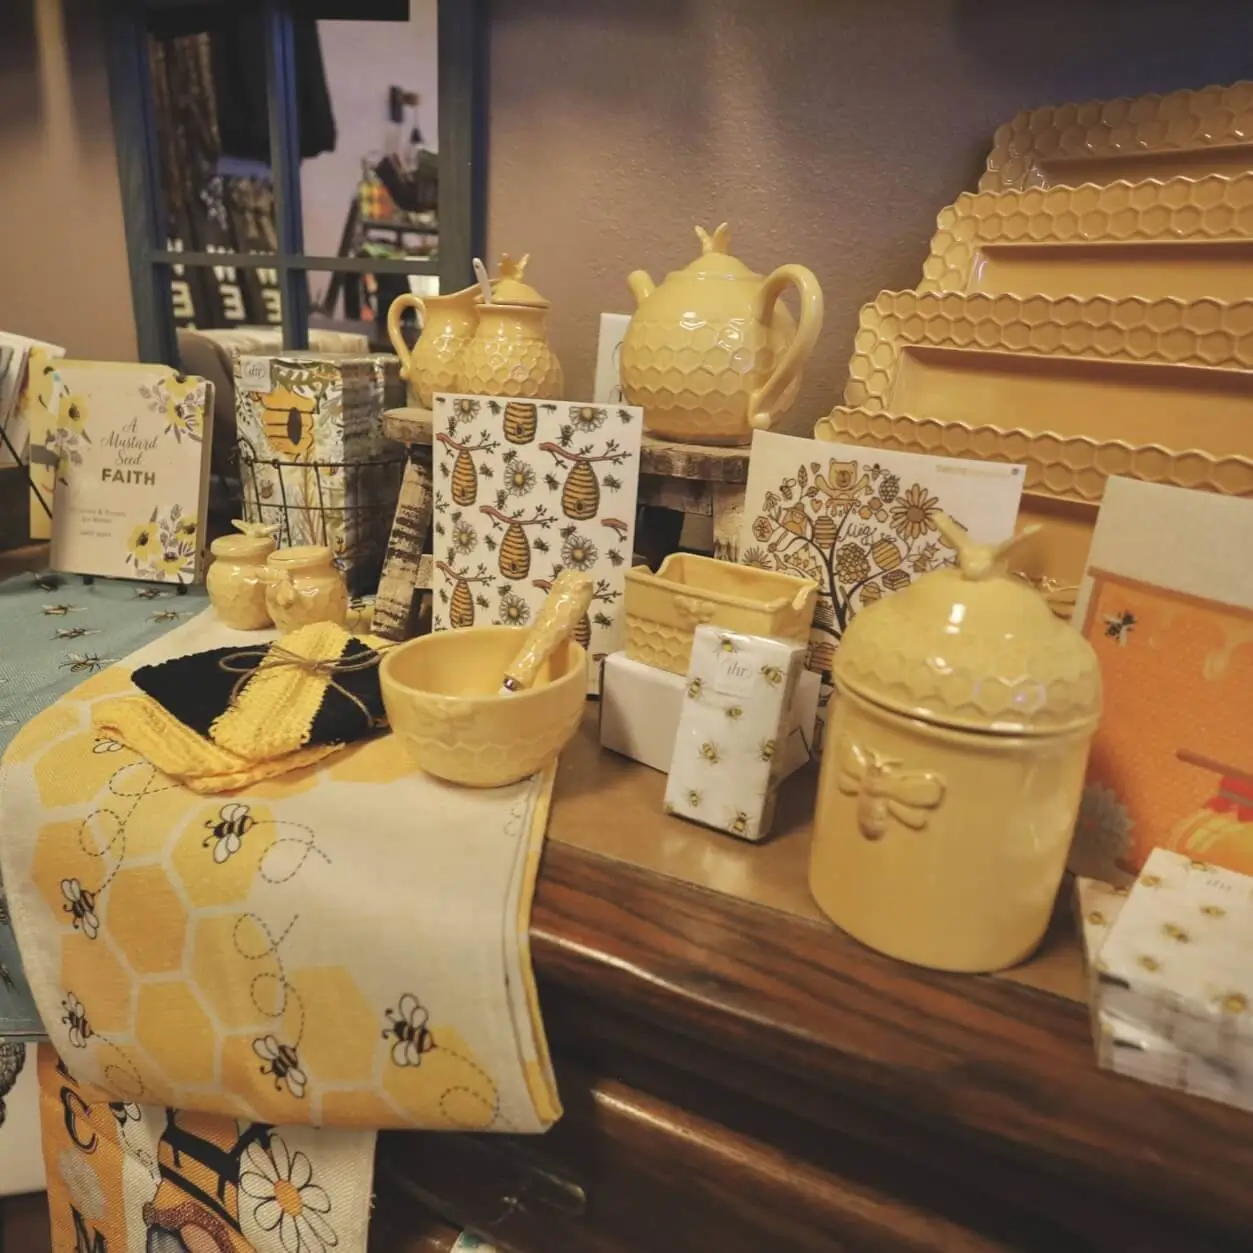 Honeybee housewares in boutique